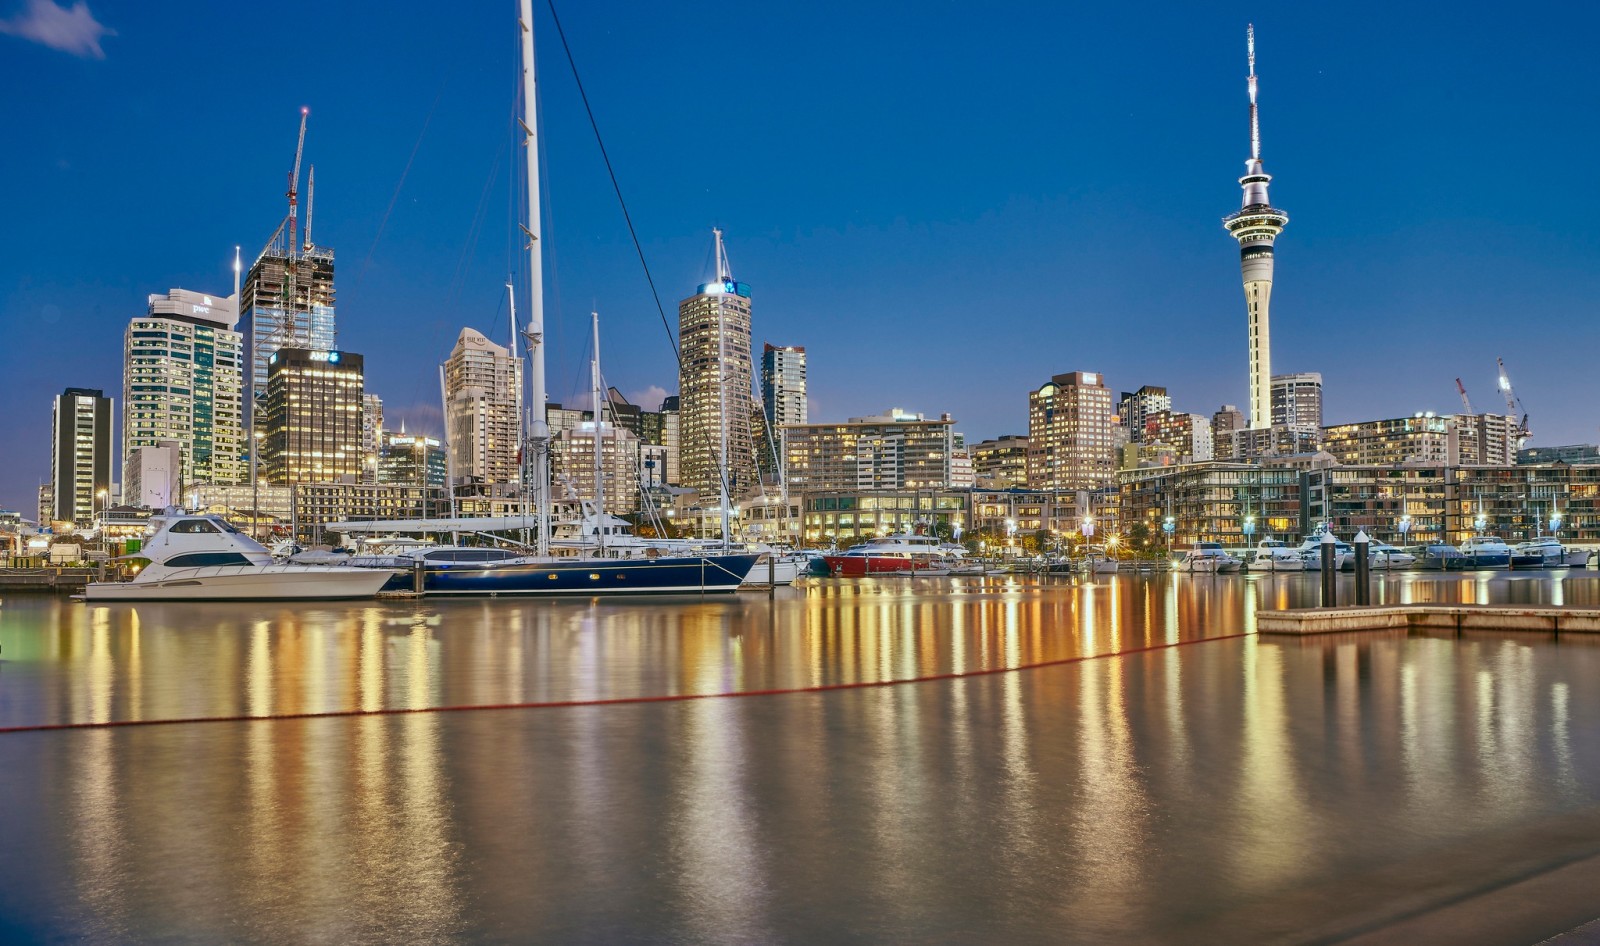 du thuyền, tòa nhà chọc trời, Trang Chủ, xây dựng, Hải cảng, New Zealand, Auckland, Bến du thuyền Westhaven